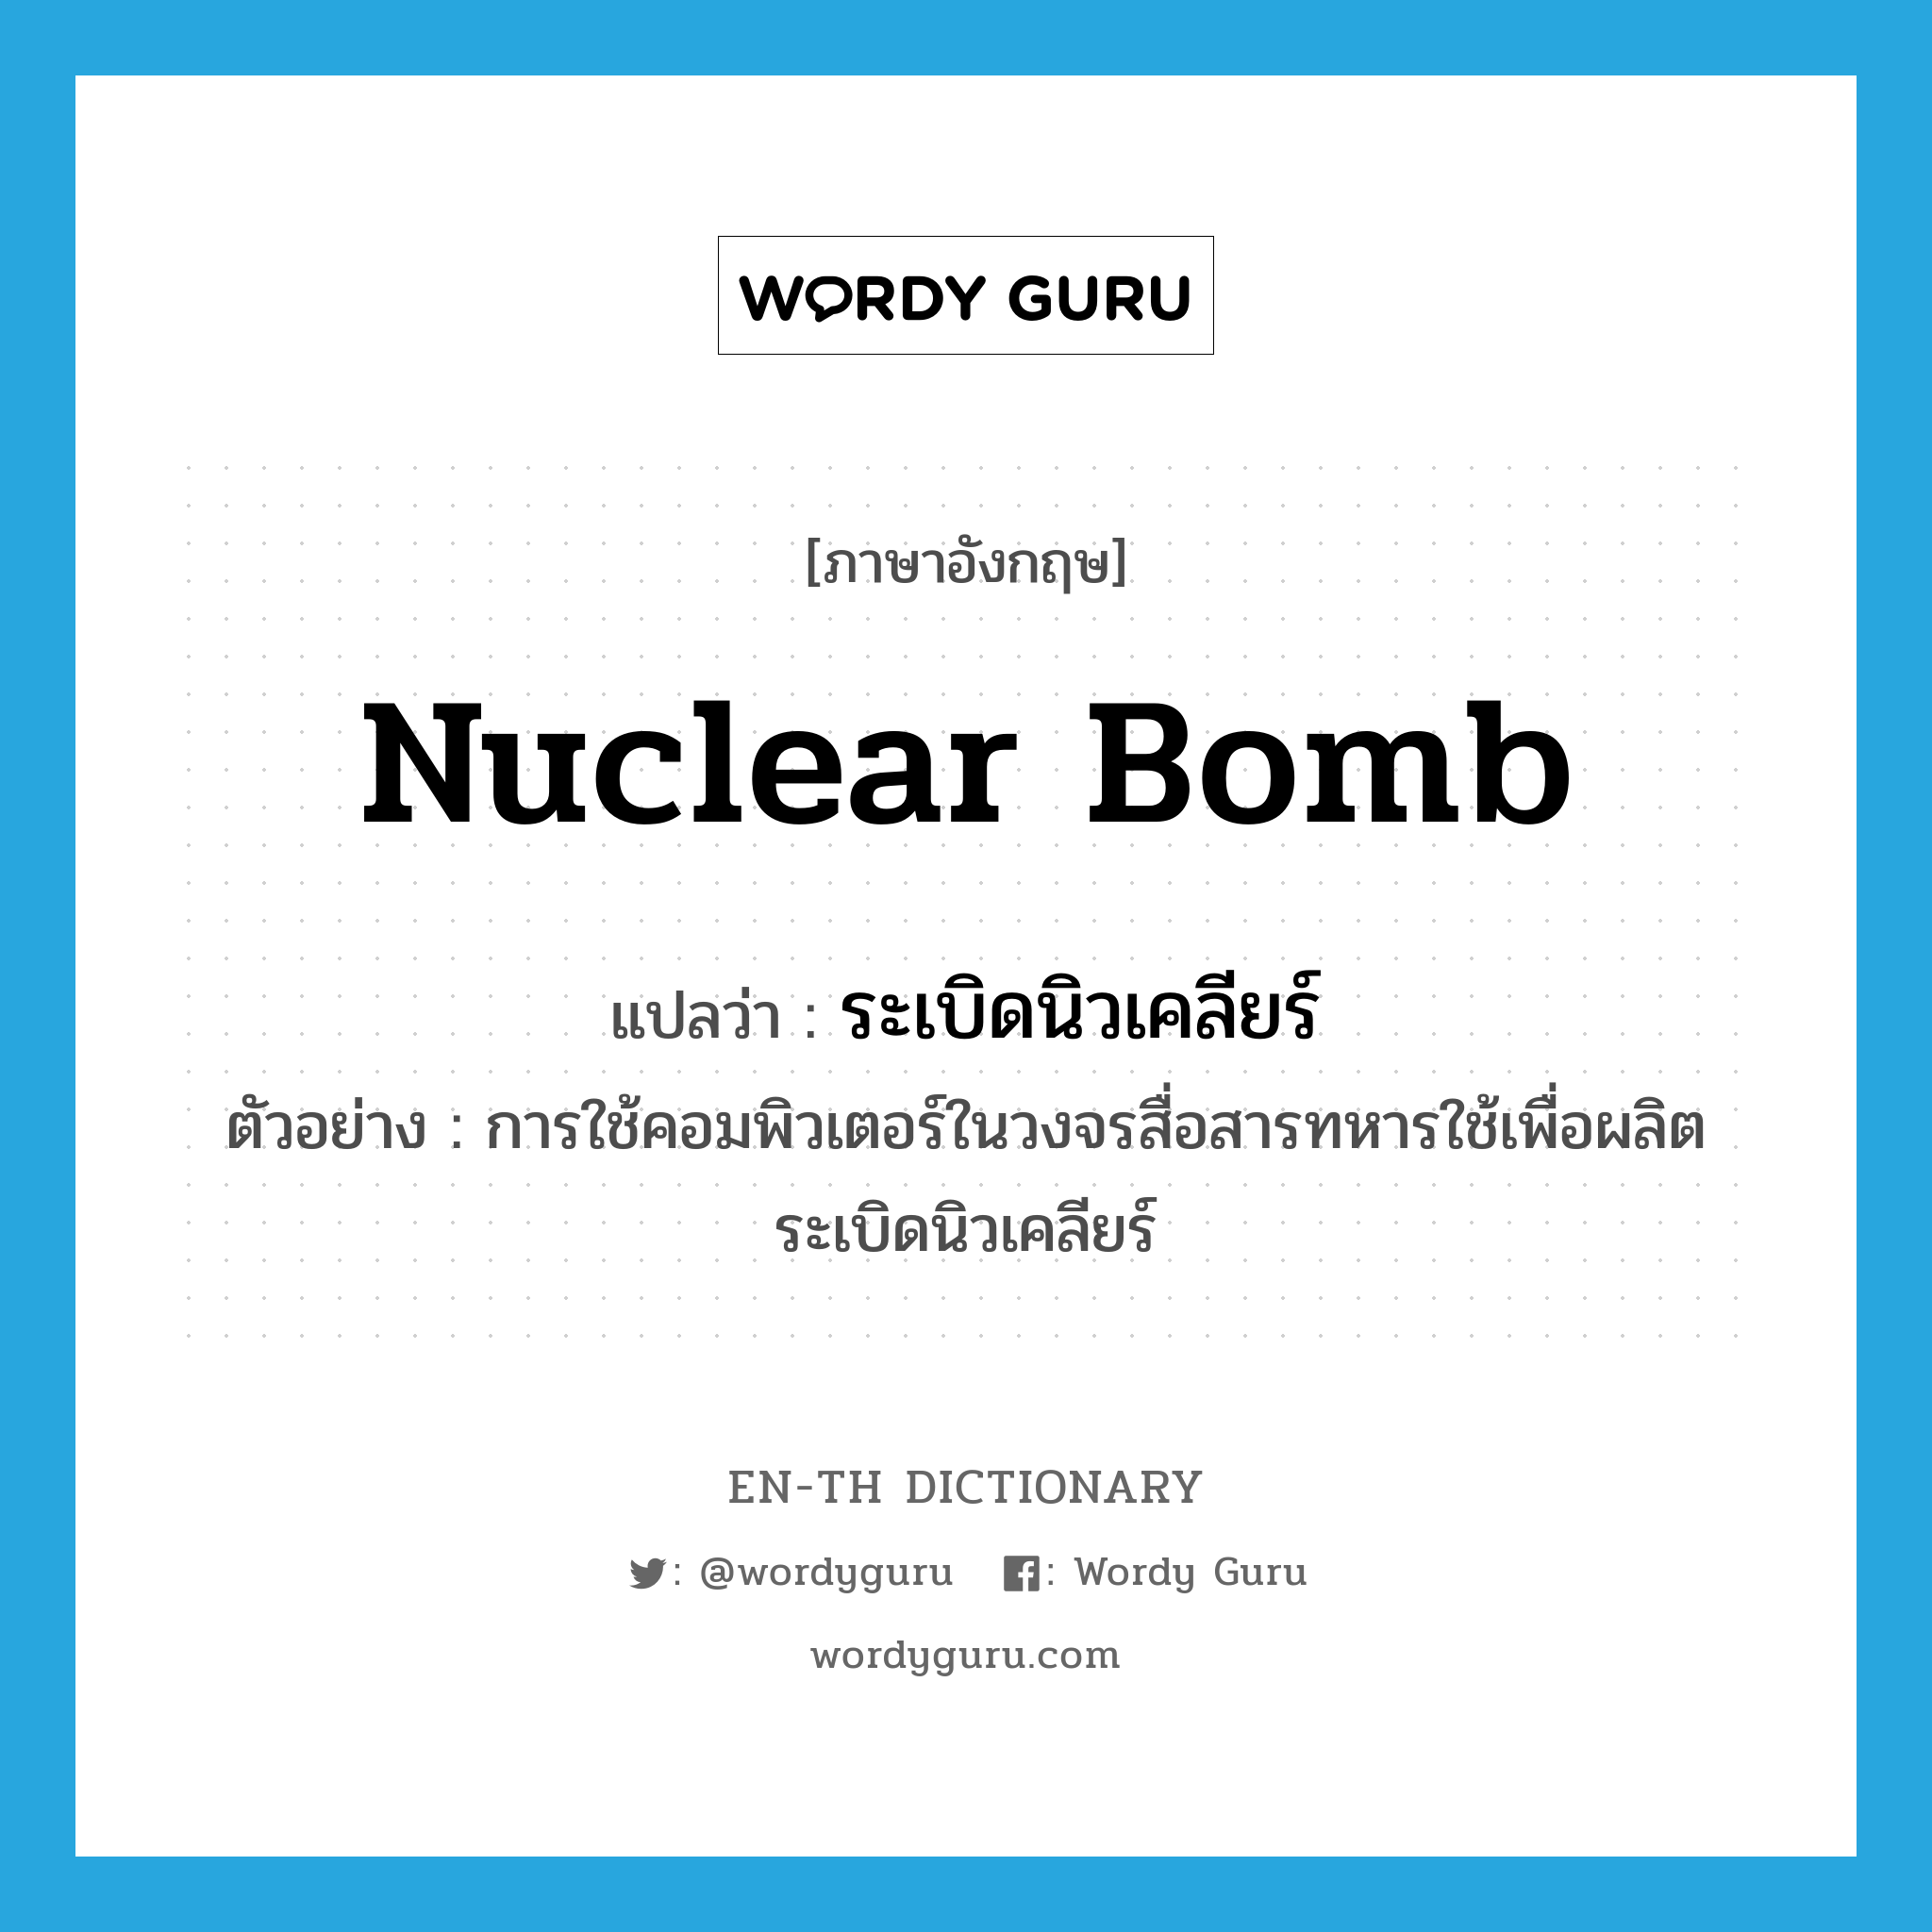 nuclear bomb แปลว่า?, คำศัพท์ภาษาอังกฤษ nuclear bomb แปลว่า ระเบิดนิวเคลียร์ ประเภท N ตัวอย่าง การใช้คอมพิวเตอร์ในวงจรสื่อสารทหารใช้เพื่อผลิตระเบิดนิวเคลียร์ หมวด N